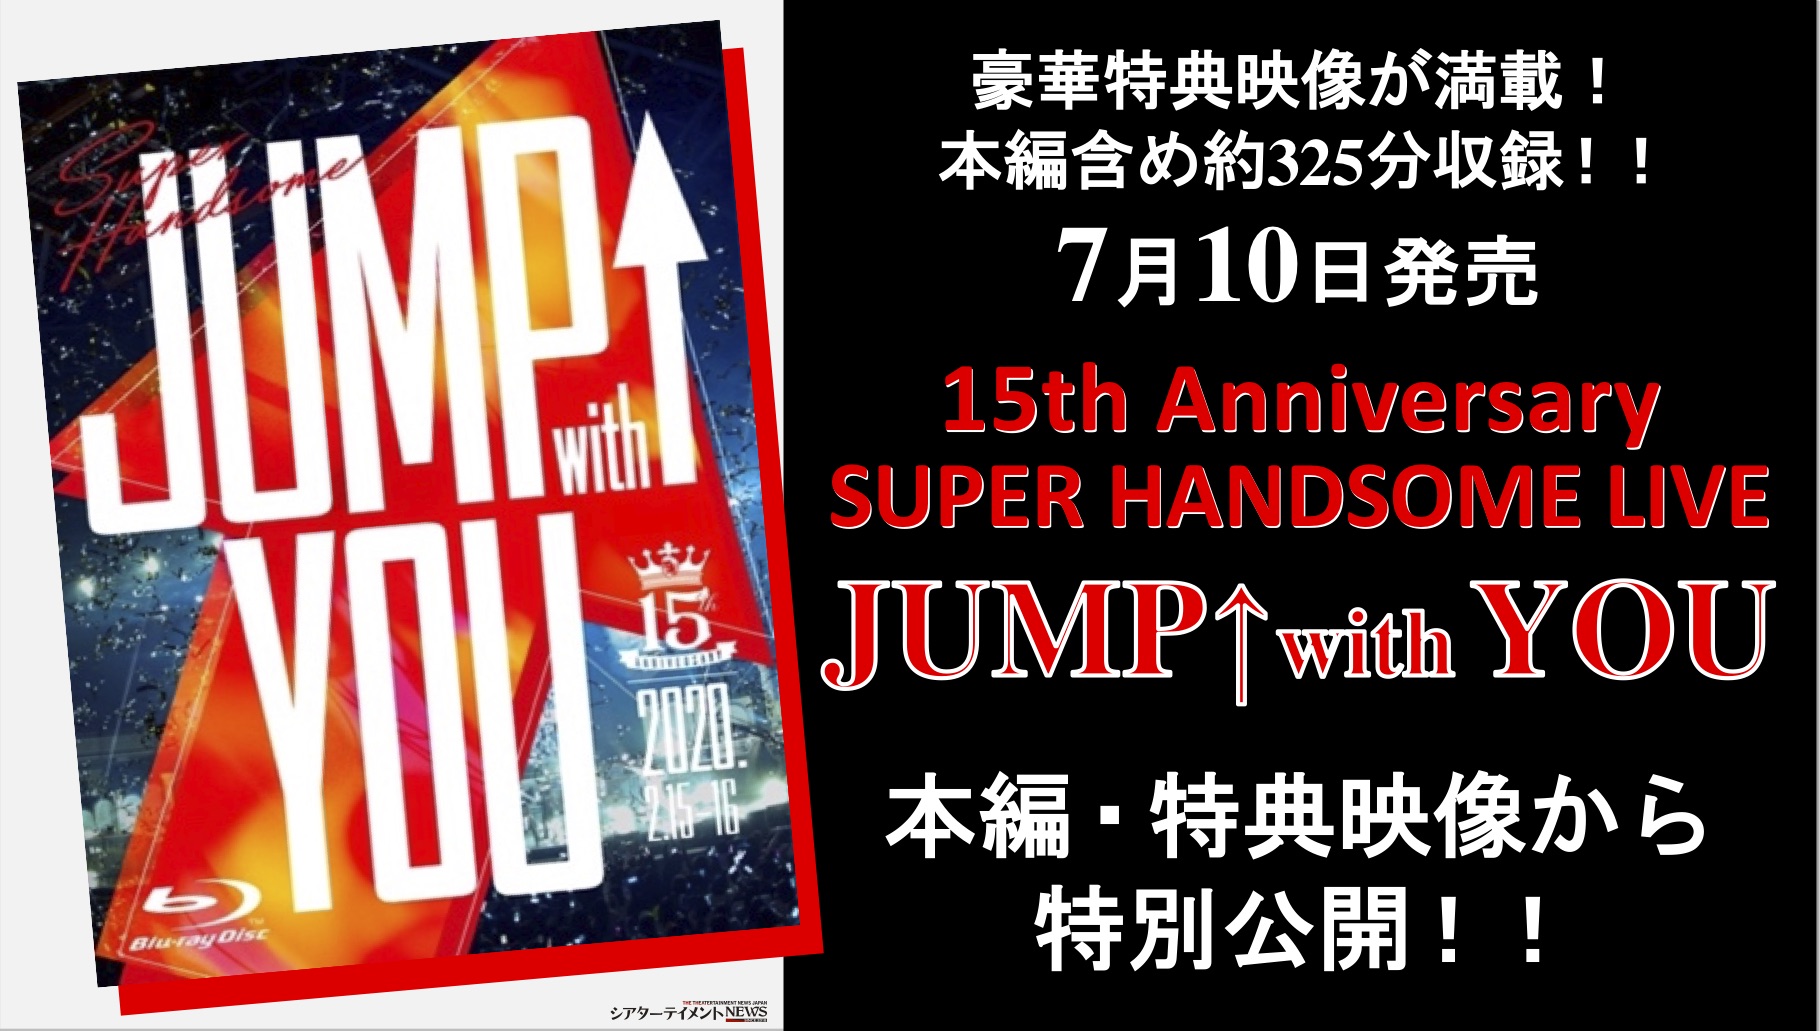 7 月 10 日 Blu-ray発売！15th Anniversary SUPER HANDSOME LIVE 